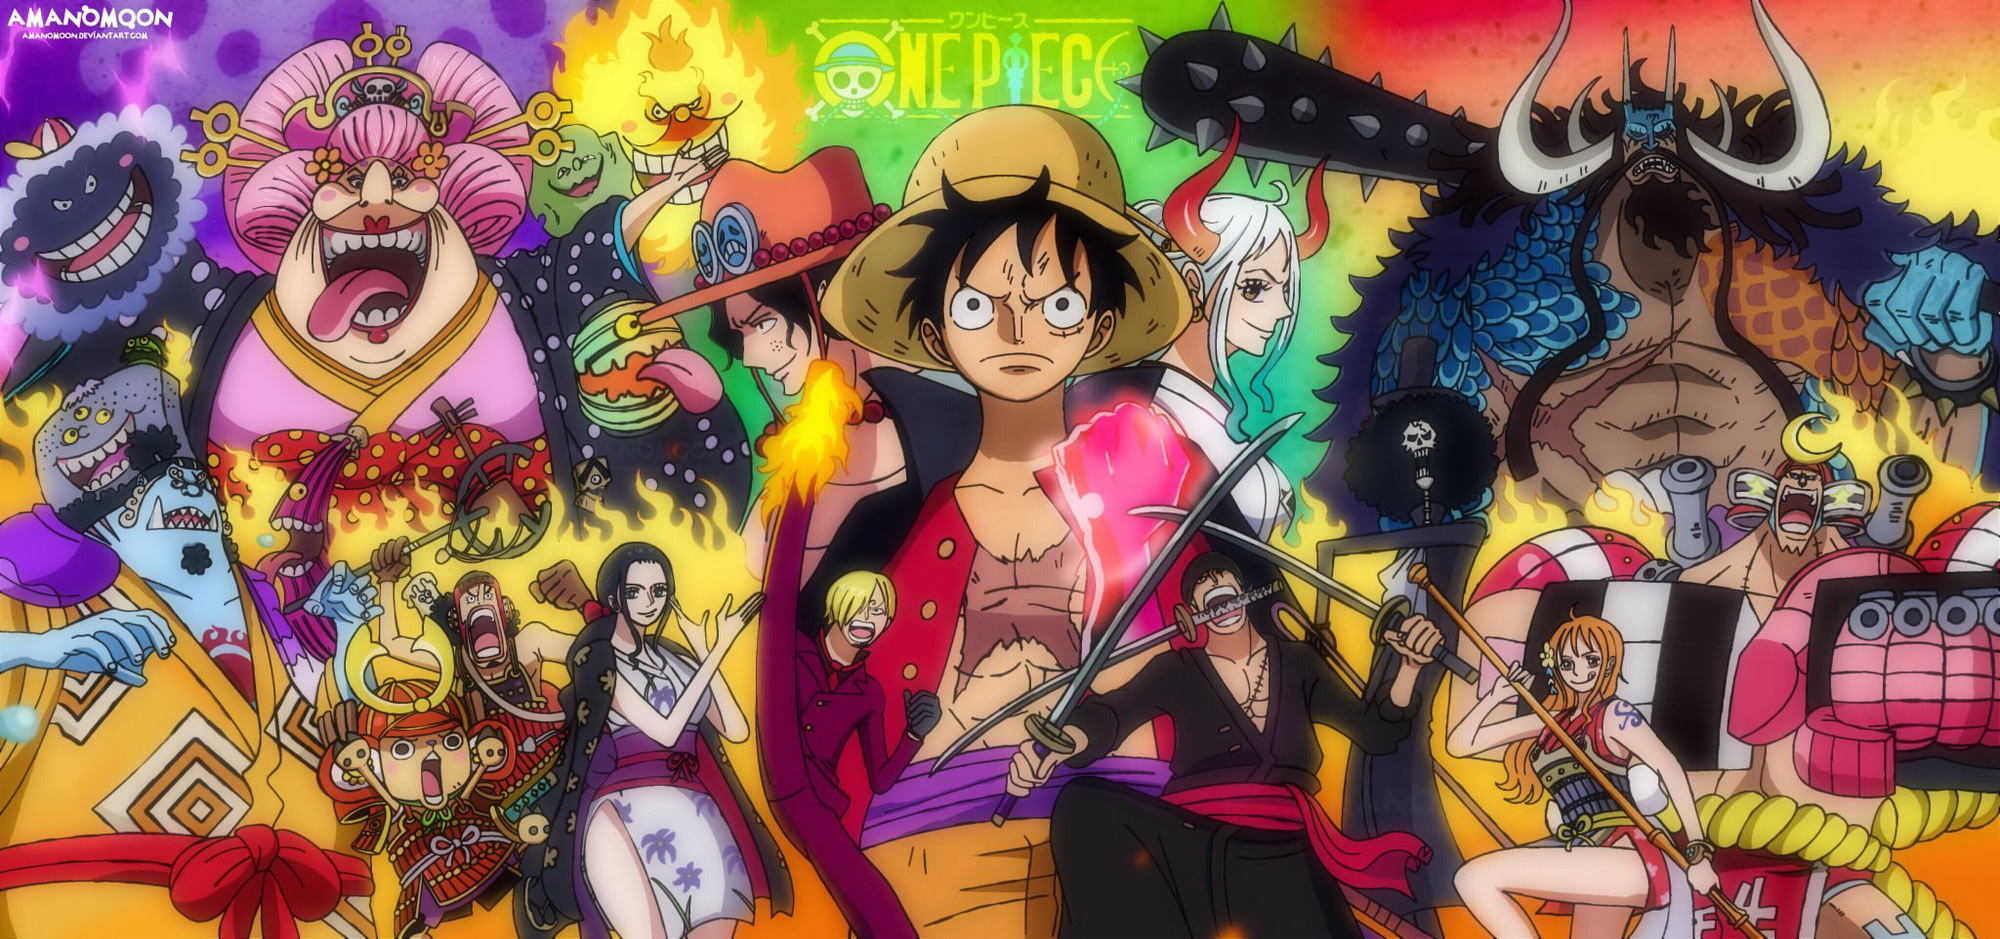 One Piece đã có tới 100 tập! Nếu bạn là fan của series này thì đây chắc chắn sẽ là một bìa trang tuyệt vời để đến xem. Hãy đến ngay và chiêm ngưỡng tài năng hội họa của tác giả.